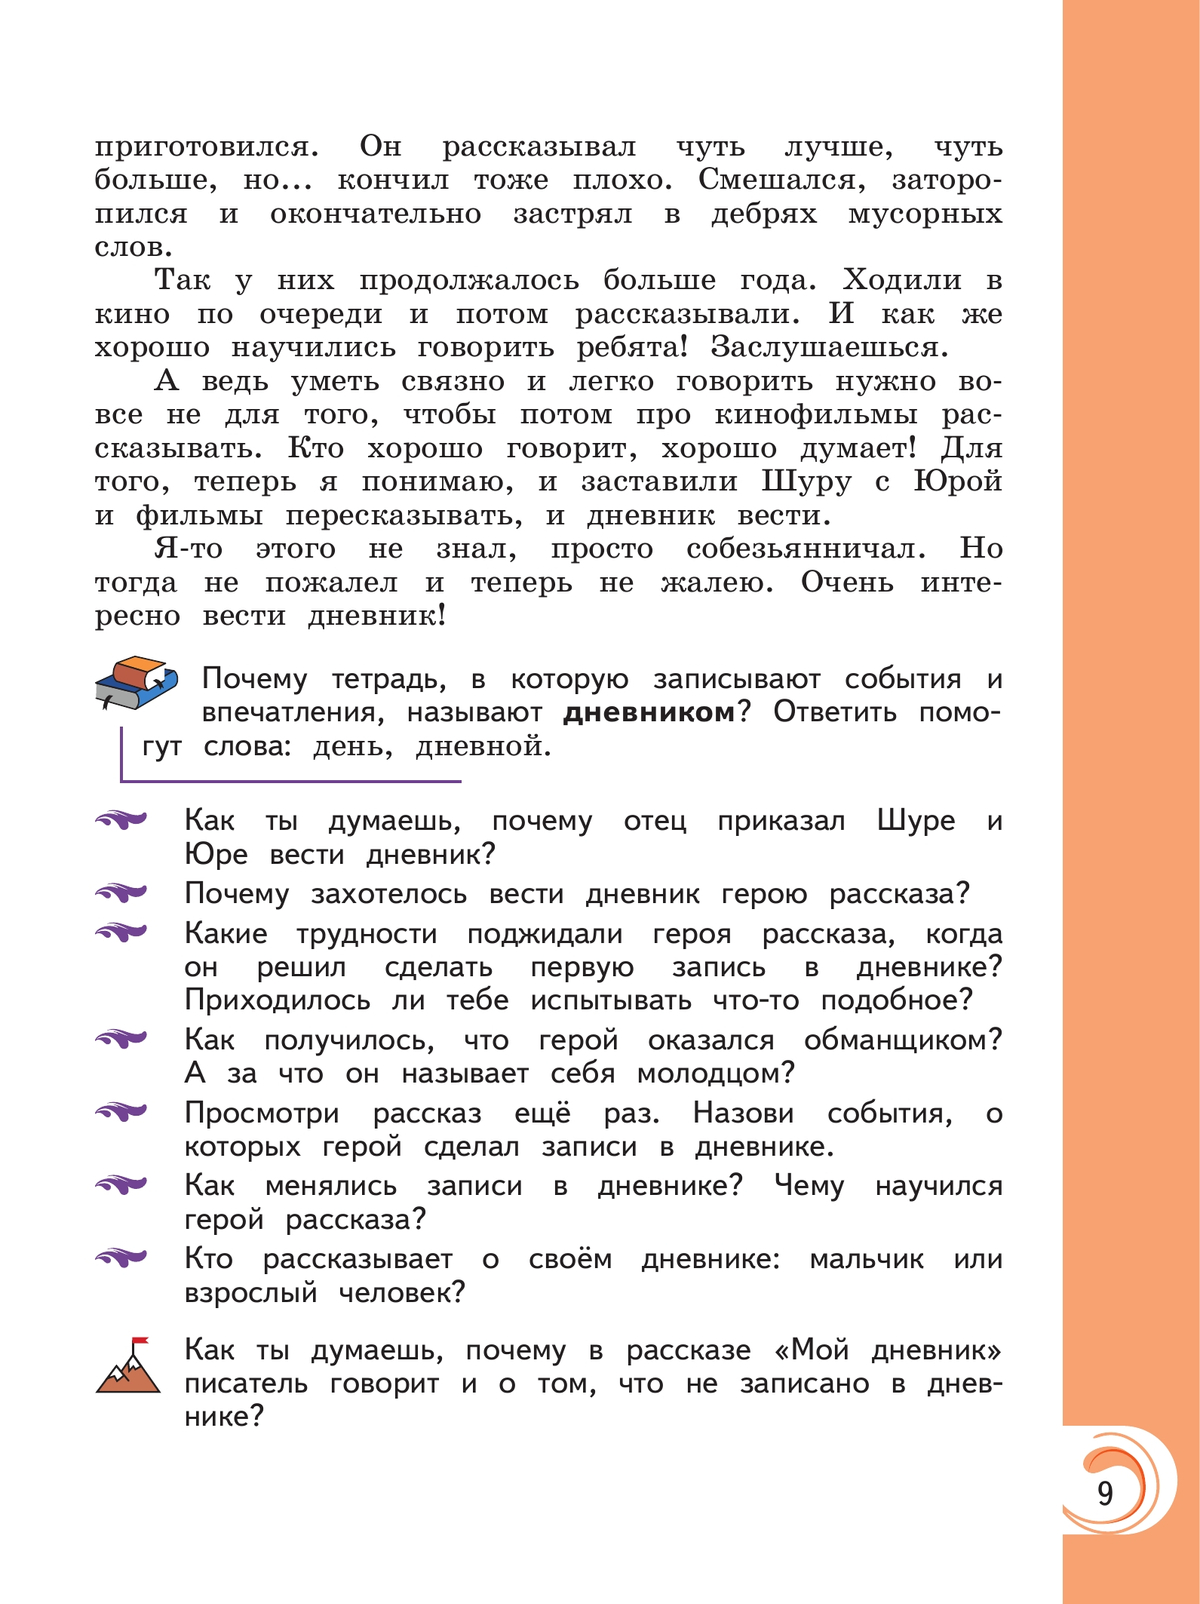 Литературное чтение на русском родном языке. 3 класс. Учебник 11